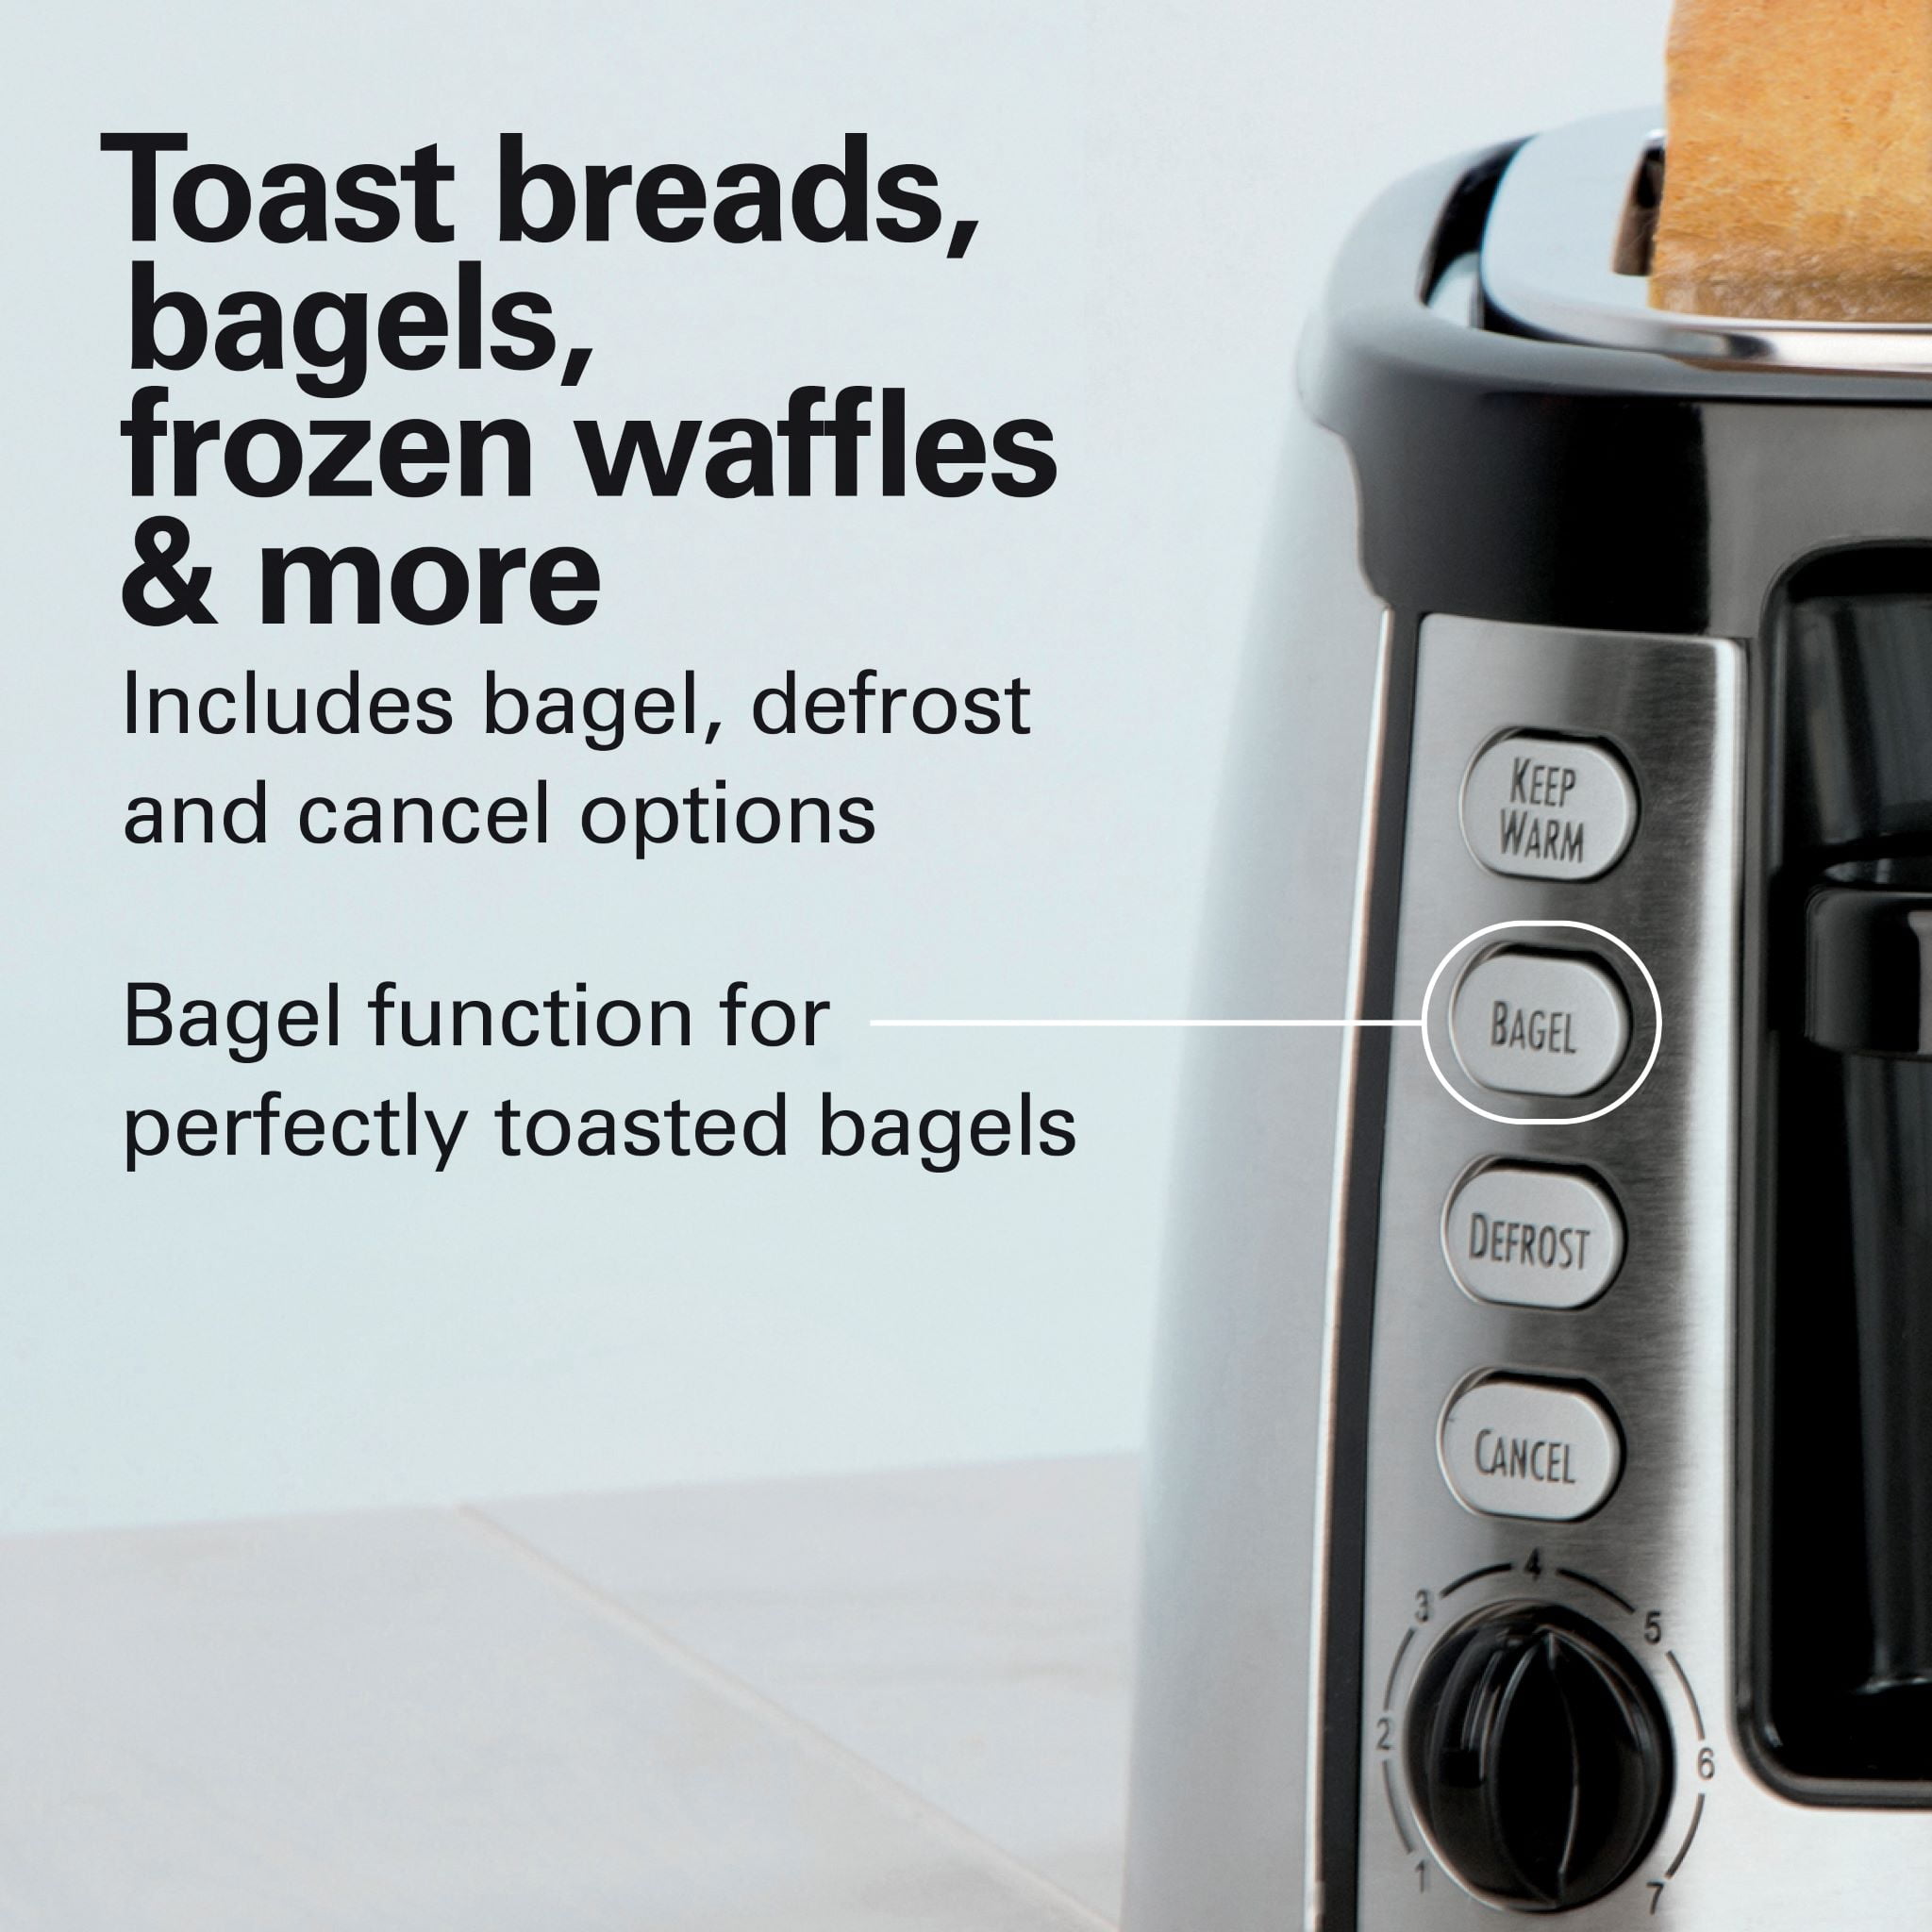 Keep Warm Toaster - 22811